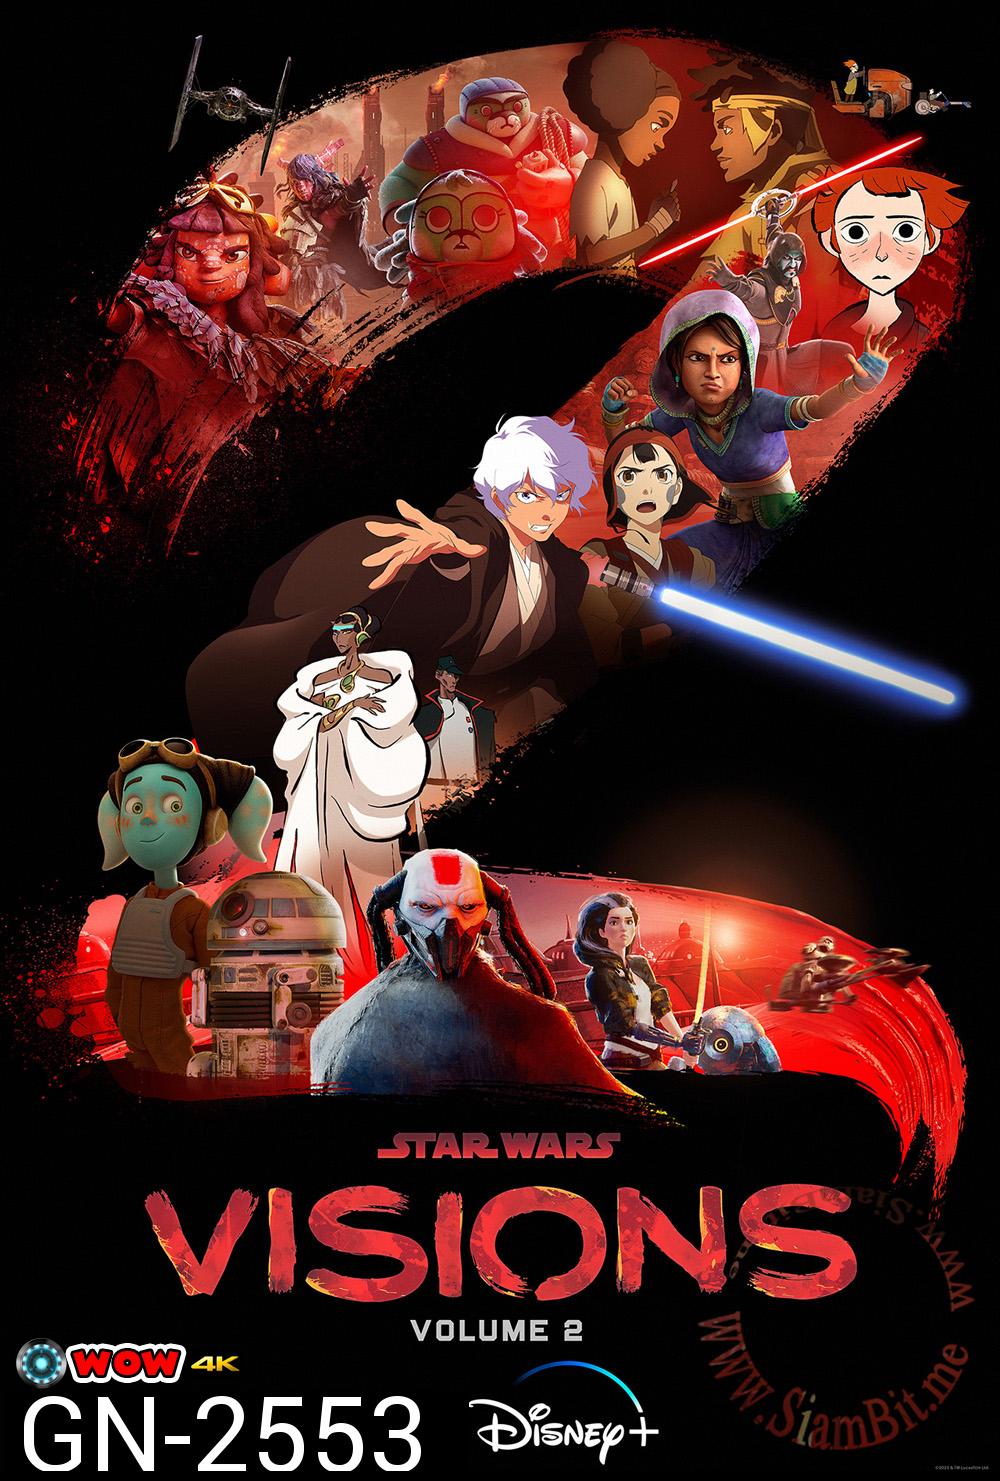 Star Wars Visions Volume 2 (9 ตอน)